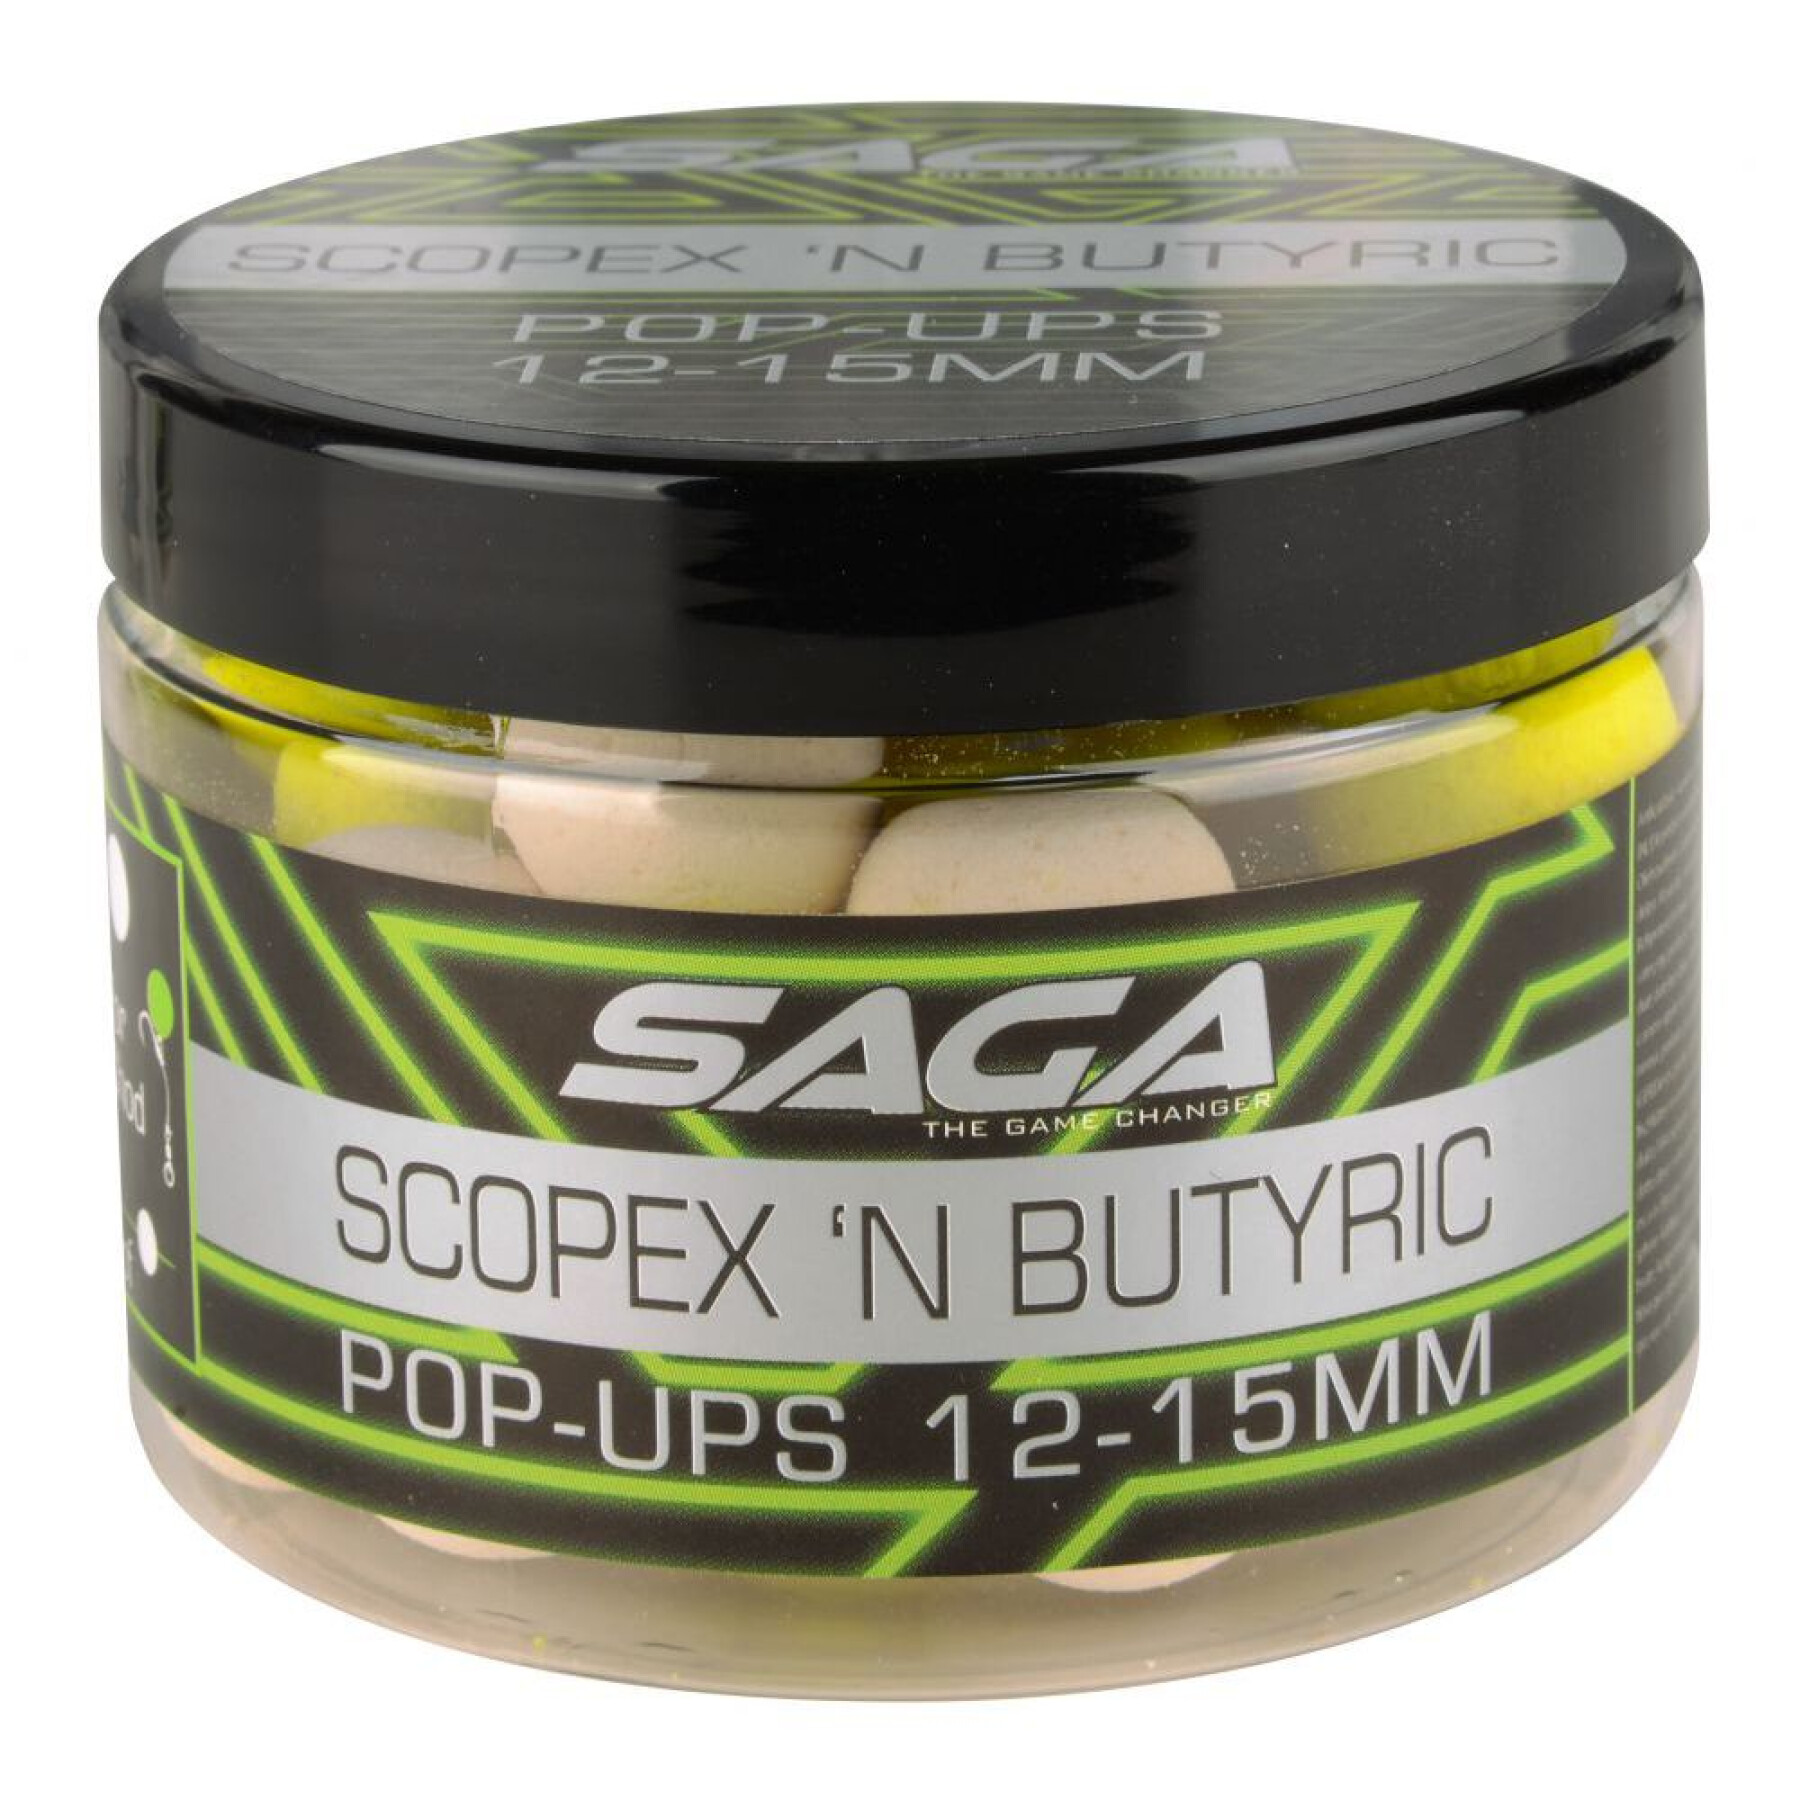 Pop-ups Saga Scopex & Butyric 50g